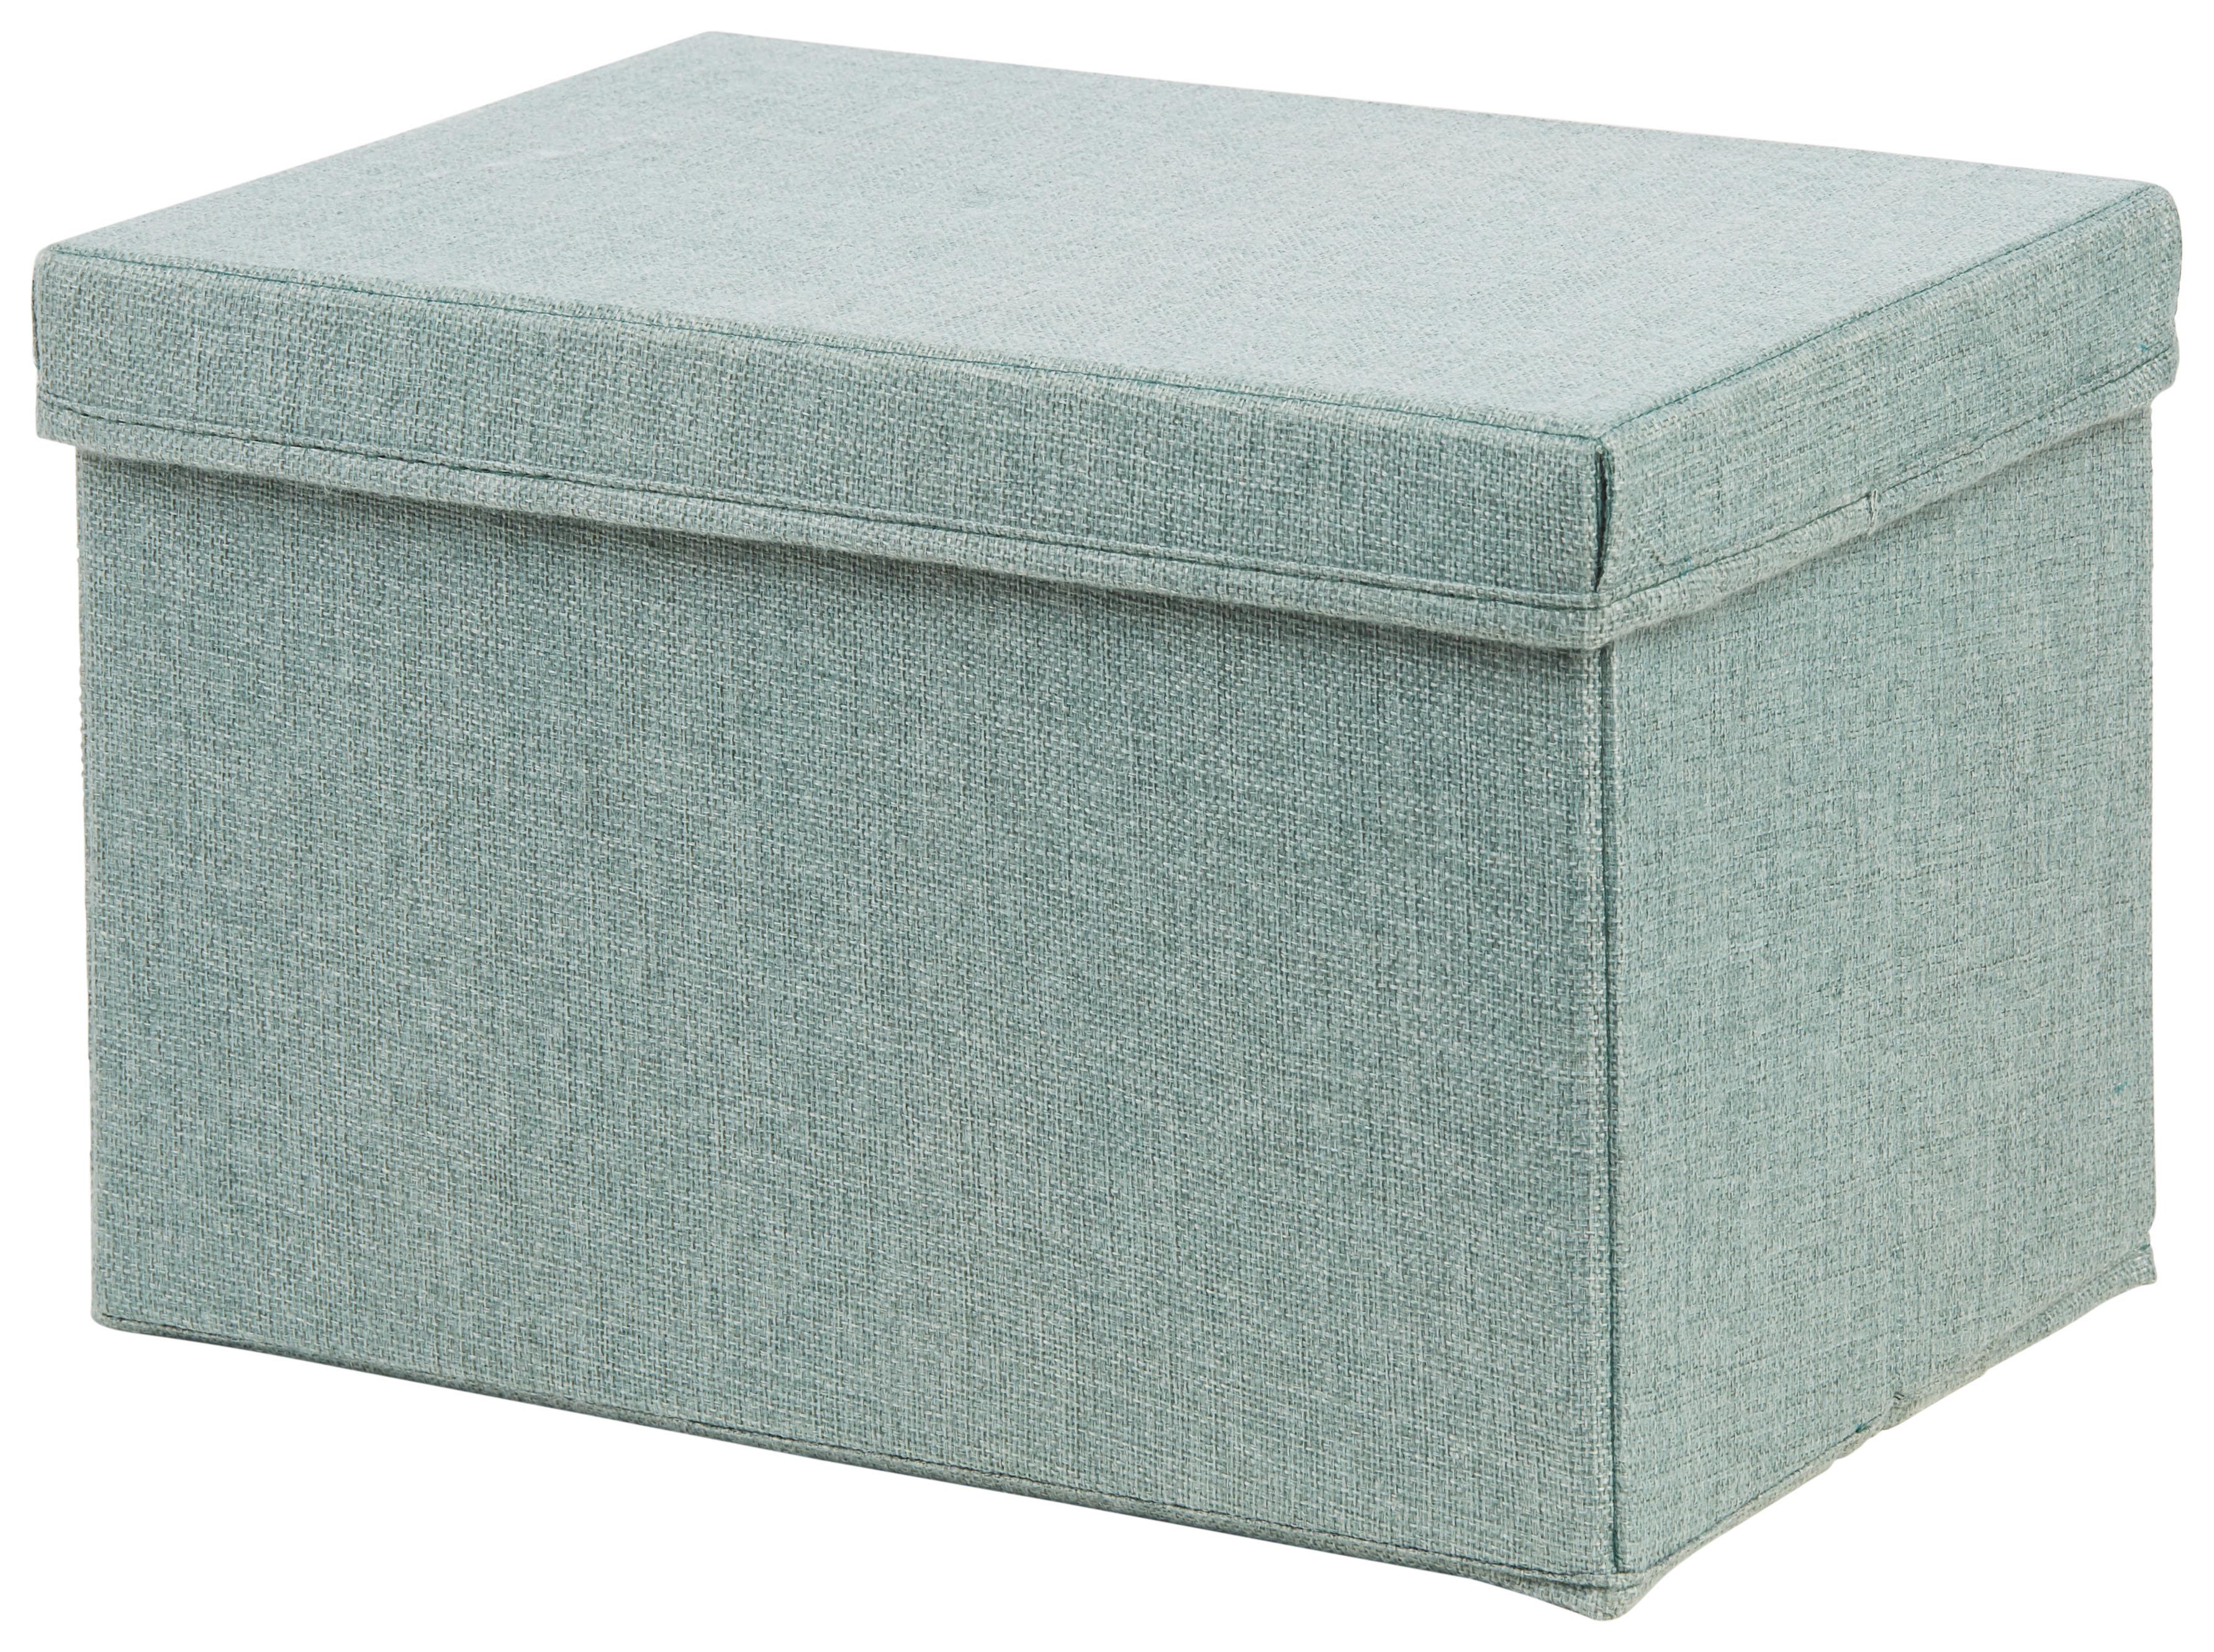 Skladací Box Cindy - Ca. 23l -Ext- - zelená, Moderný, kartón/textil (38/26/24cm) - Premium Living